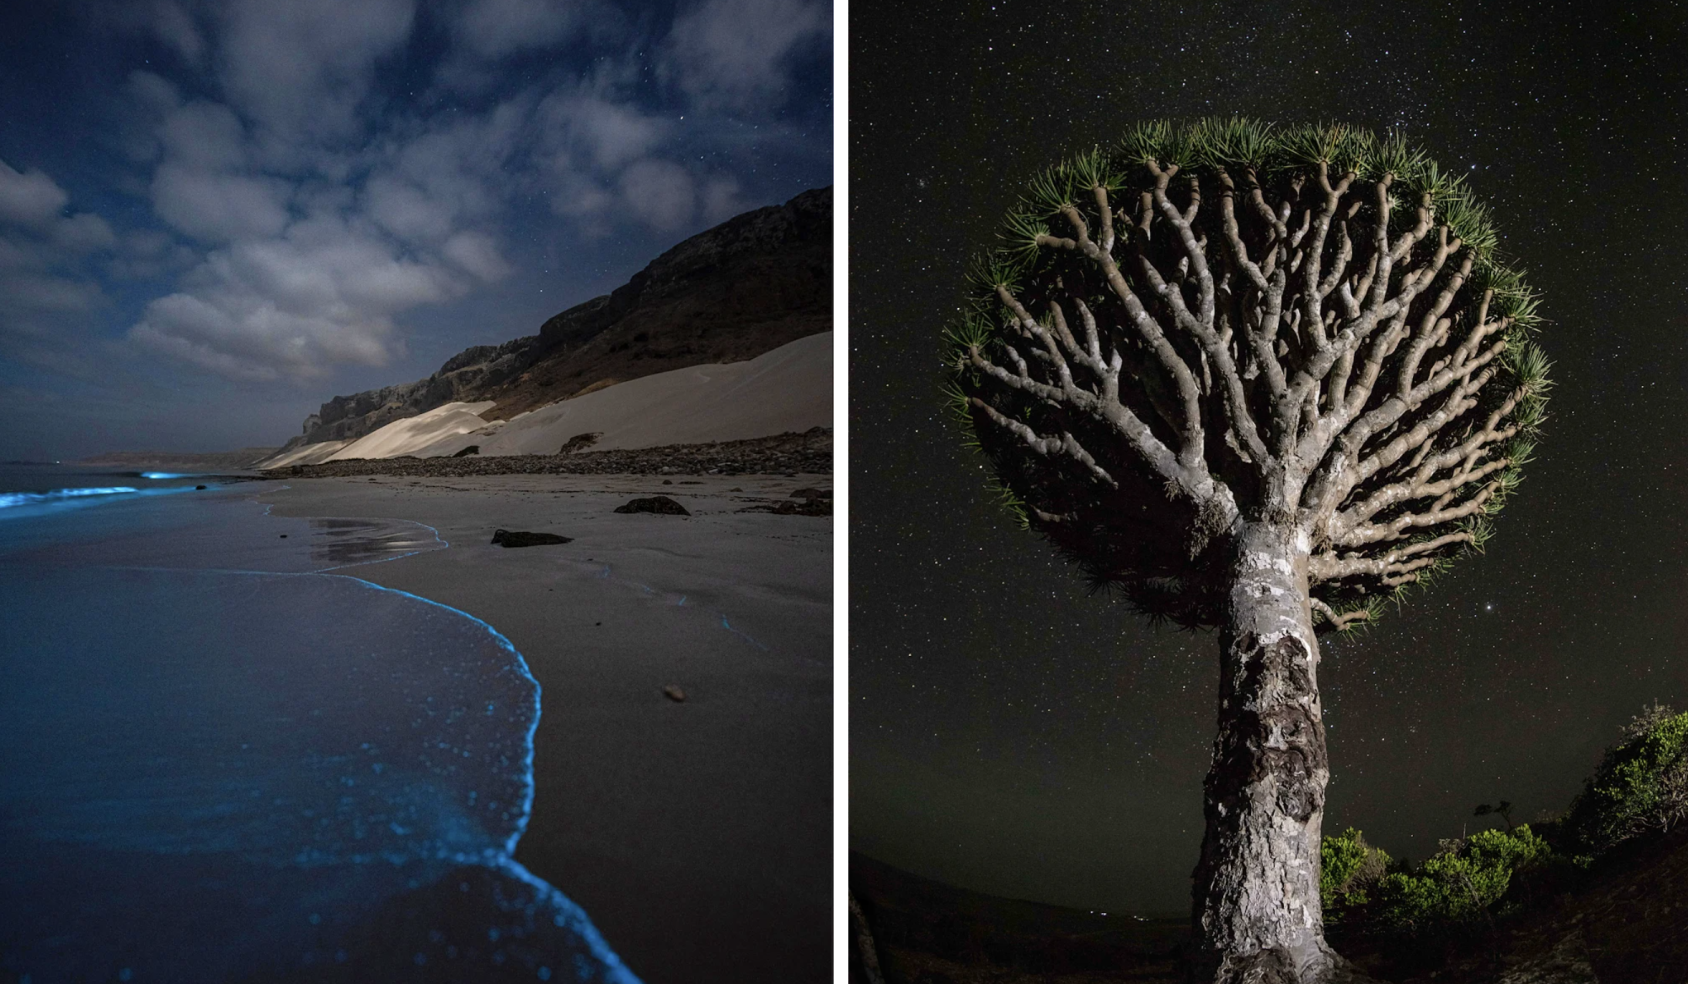 Deux photos juxtaposées : l'une est celle d'une plage vue de nuit et l'autre celle d'un dragonnier de Socotra s'élevant vers un ciel étoilé.